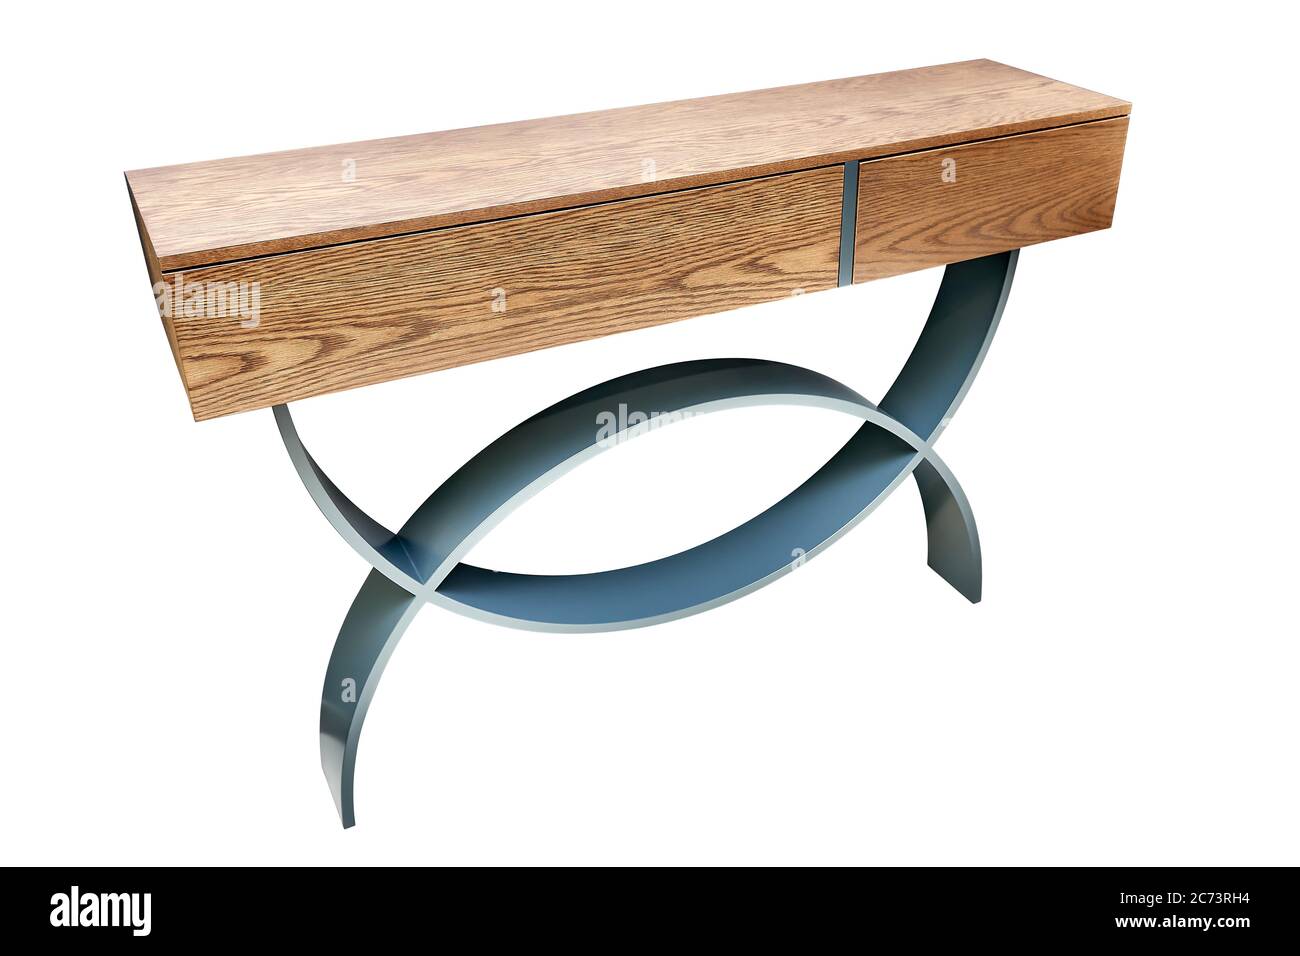 Table de console en bois avec pieds courbés laqués gris isolés sur du blanc Banque D'Images